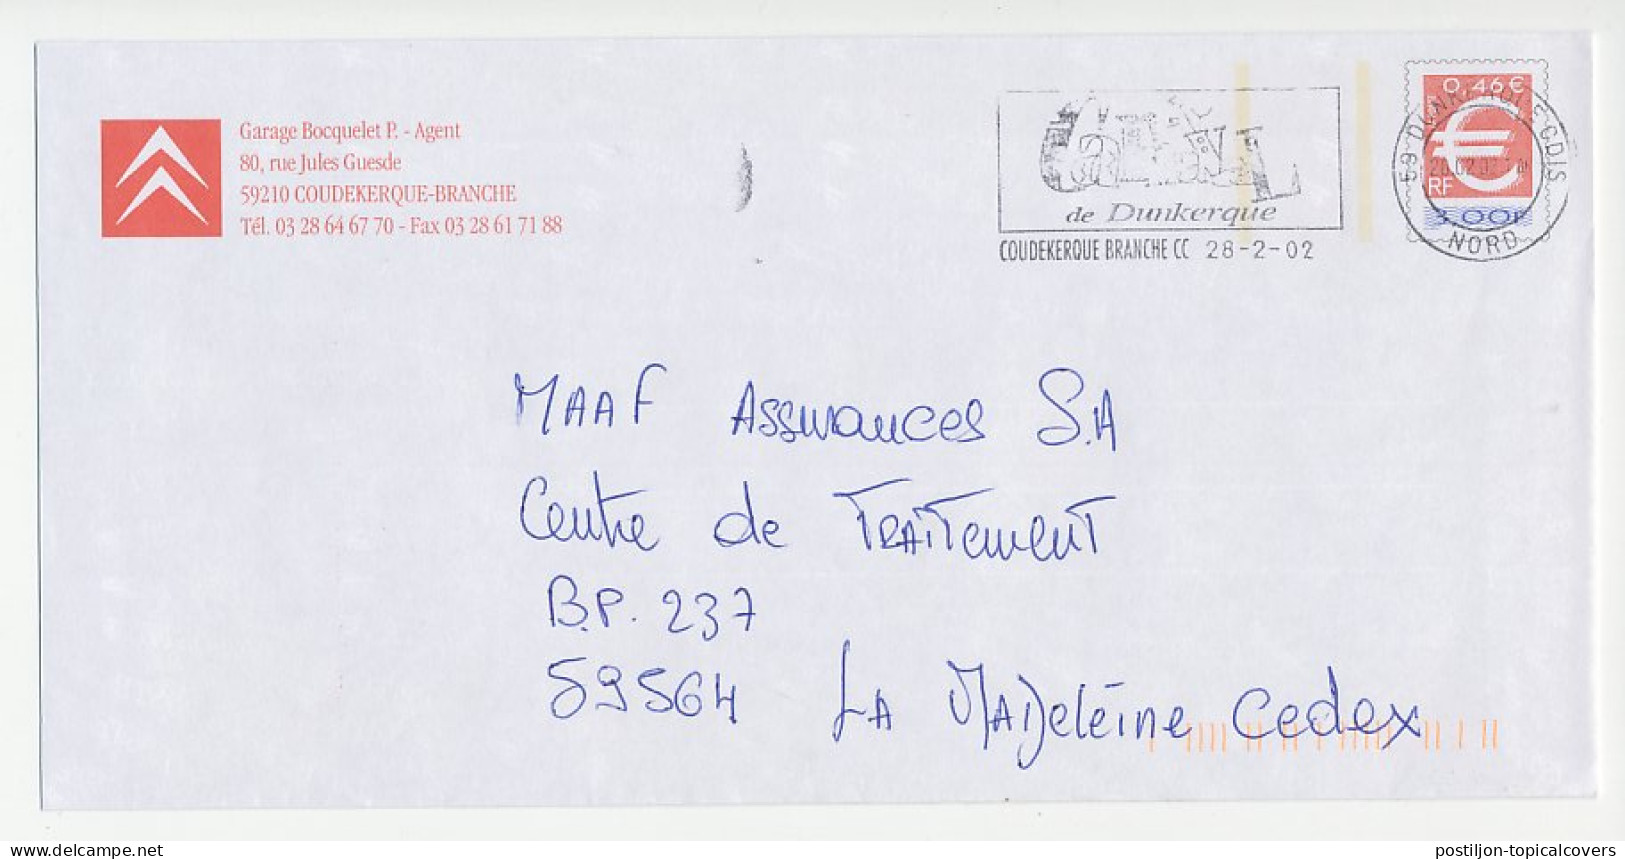 Postal Stationery / PAP France 2002 Car - Citroën - Automobili